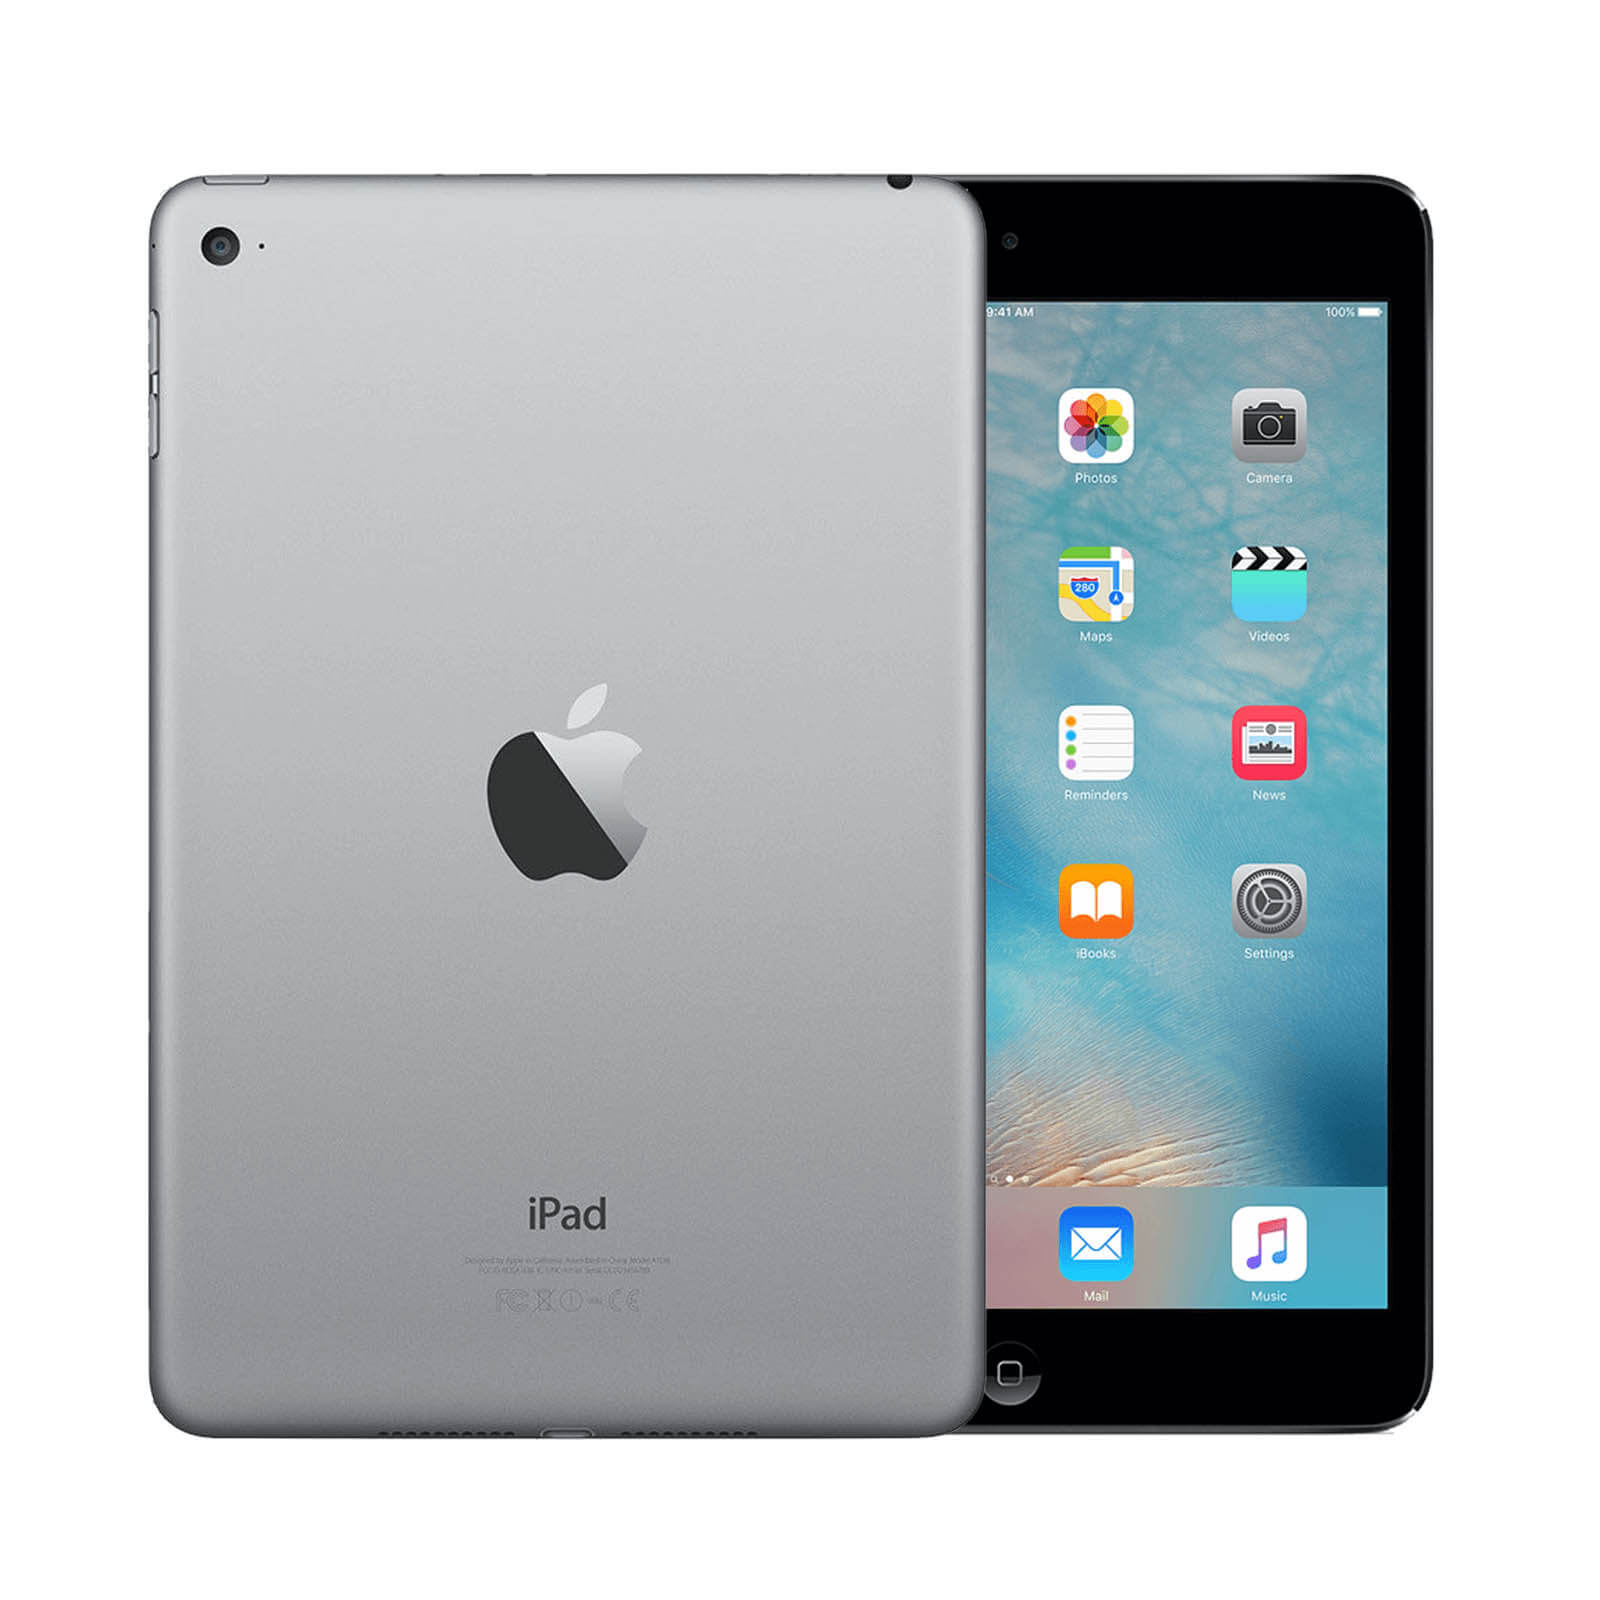 Apple iPad Mini 4 16GB Space Grey WiFi - Very Good 16GB Space Grey Very Good